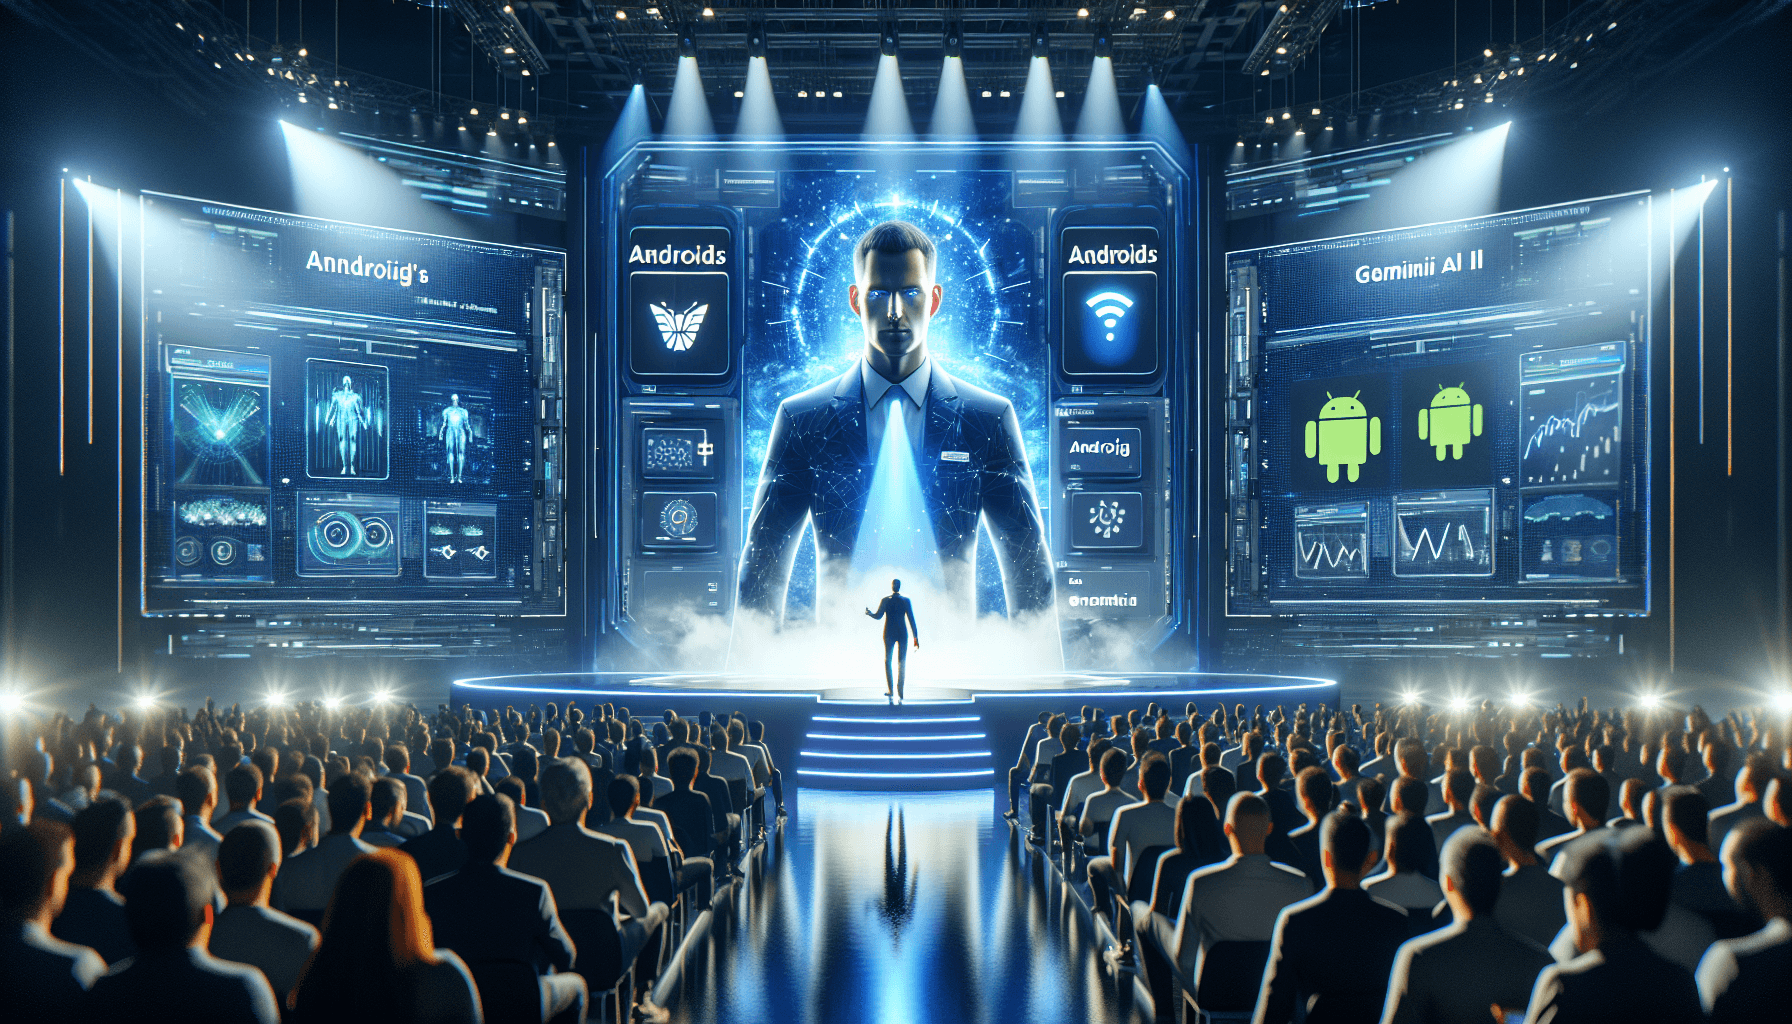 Android y Gemini: Evolución en Inteligencia Artificial